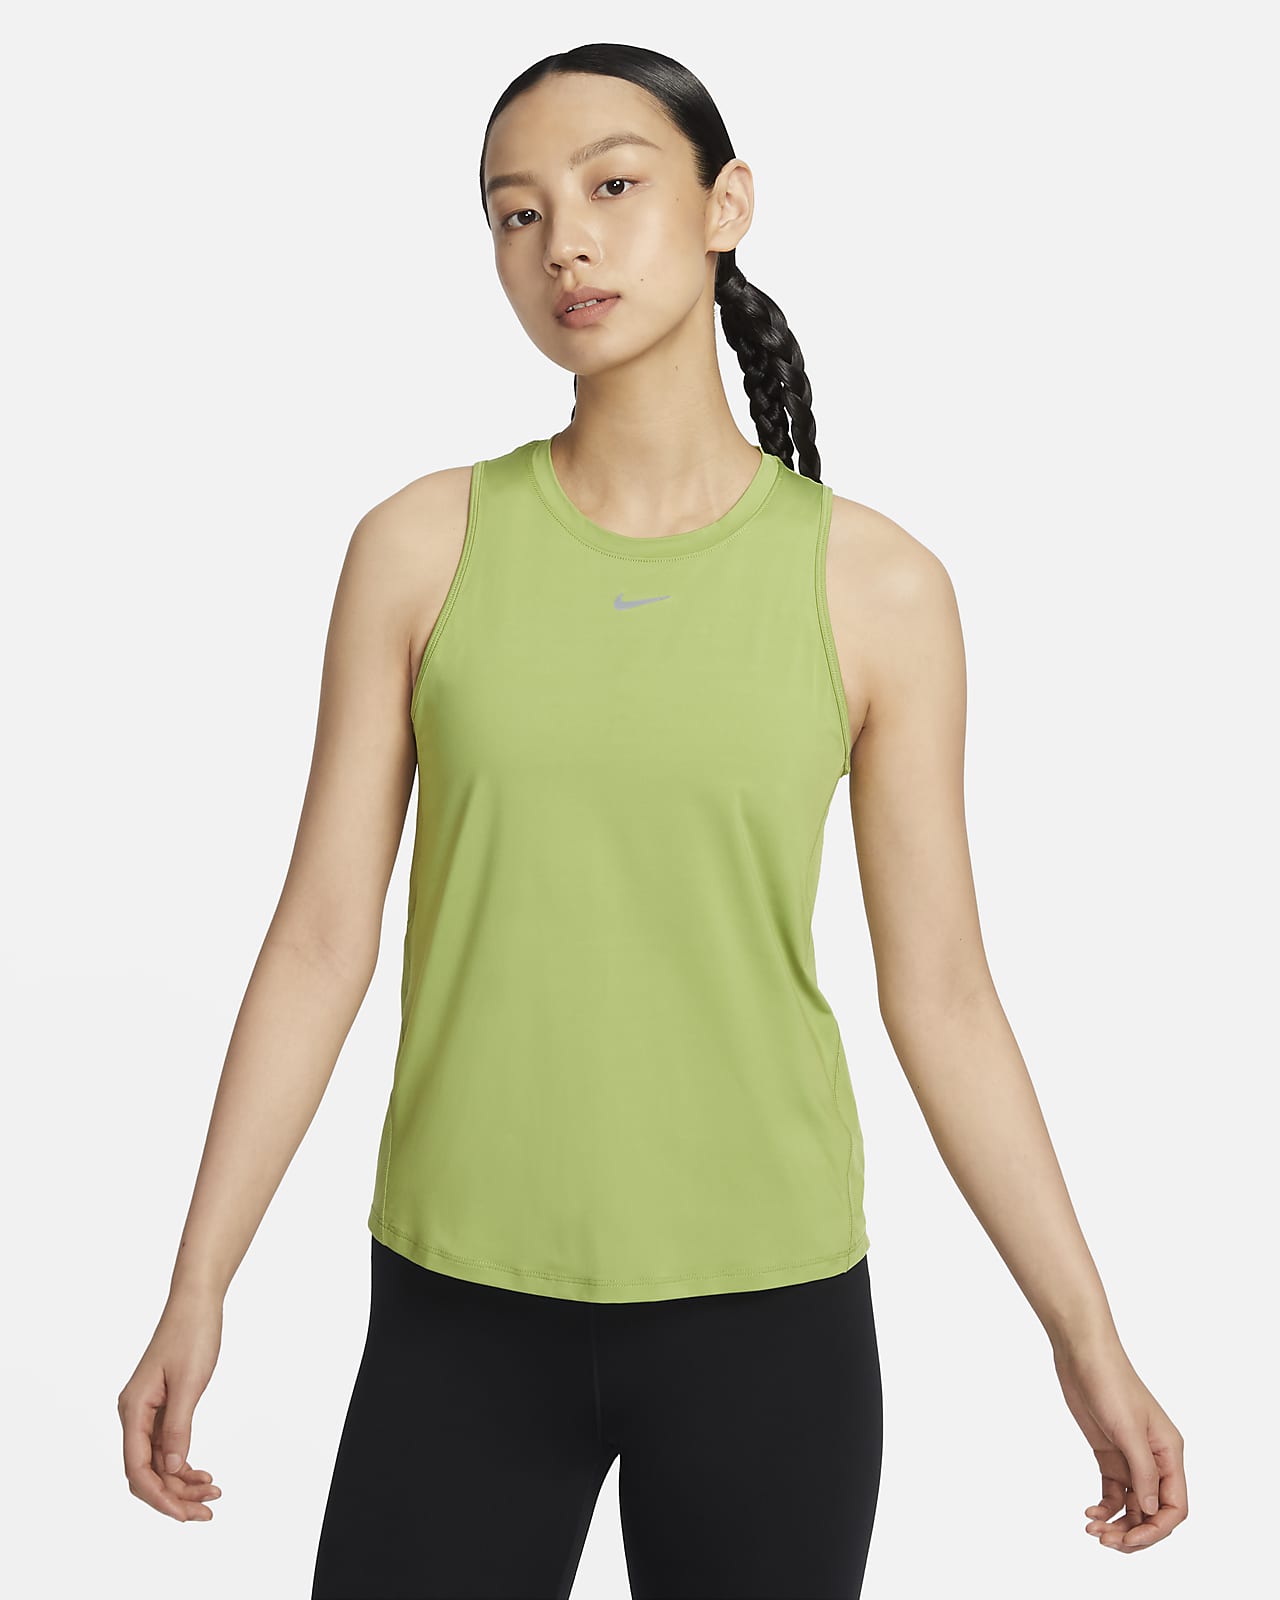 Nike Women's One Standard Elastika Tank Top, Standard Fit, Sleeveless,  Dri-FIT, Sports